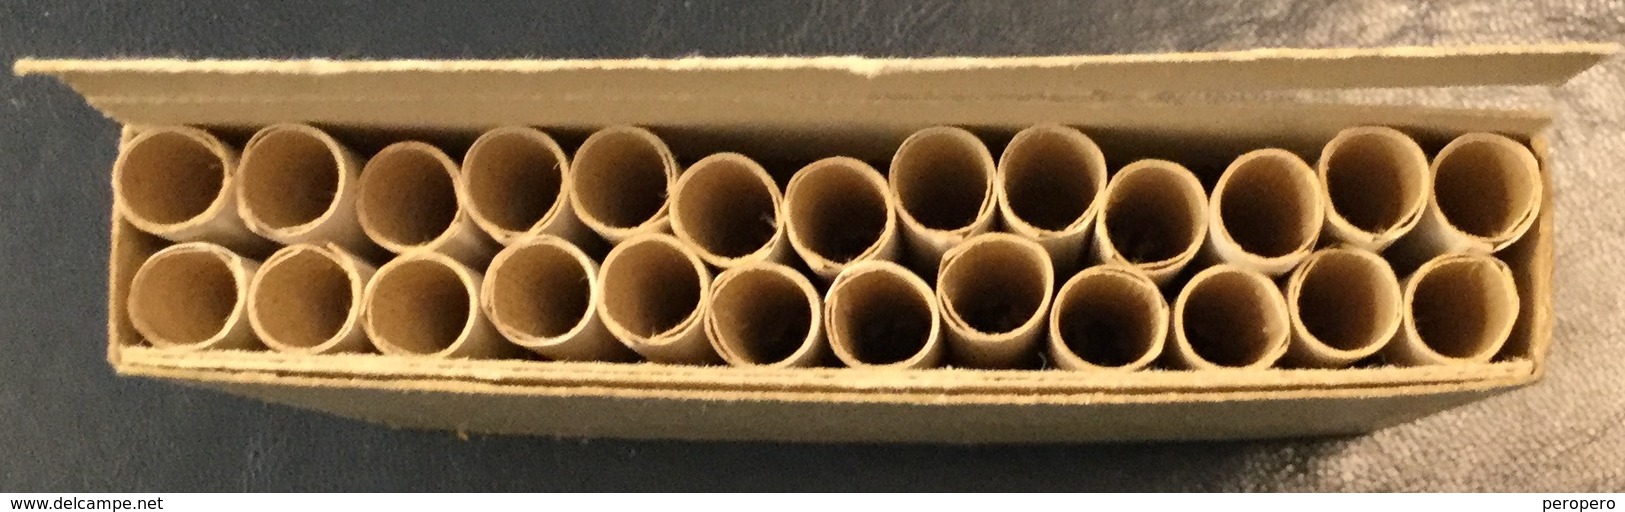 FULL    TOBACCO  BOX    CIGARETTES  BLED   FNRJ  YUGOSLAVIA - Empty Tobacco Boxes